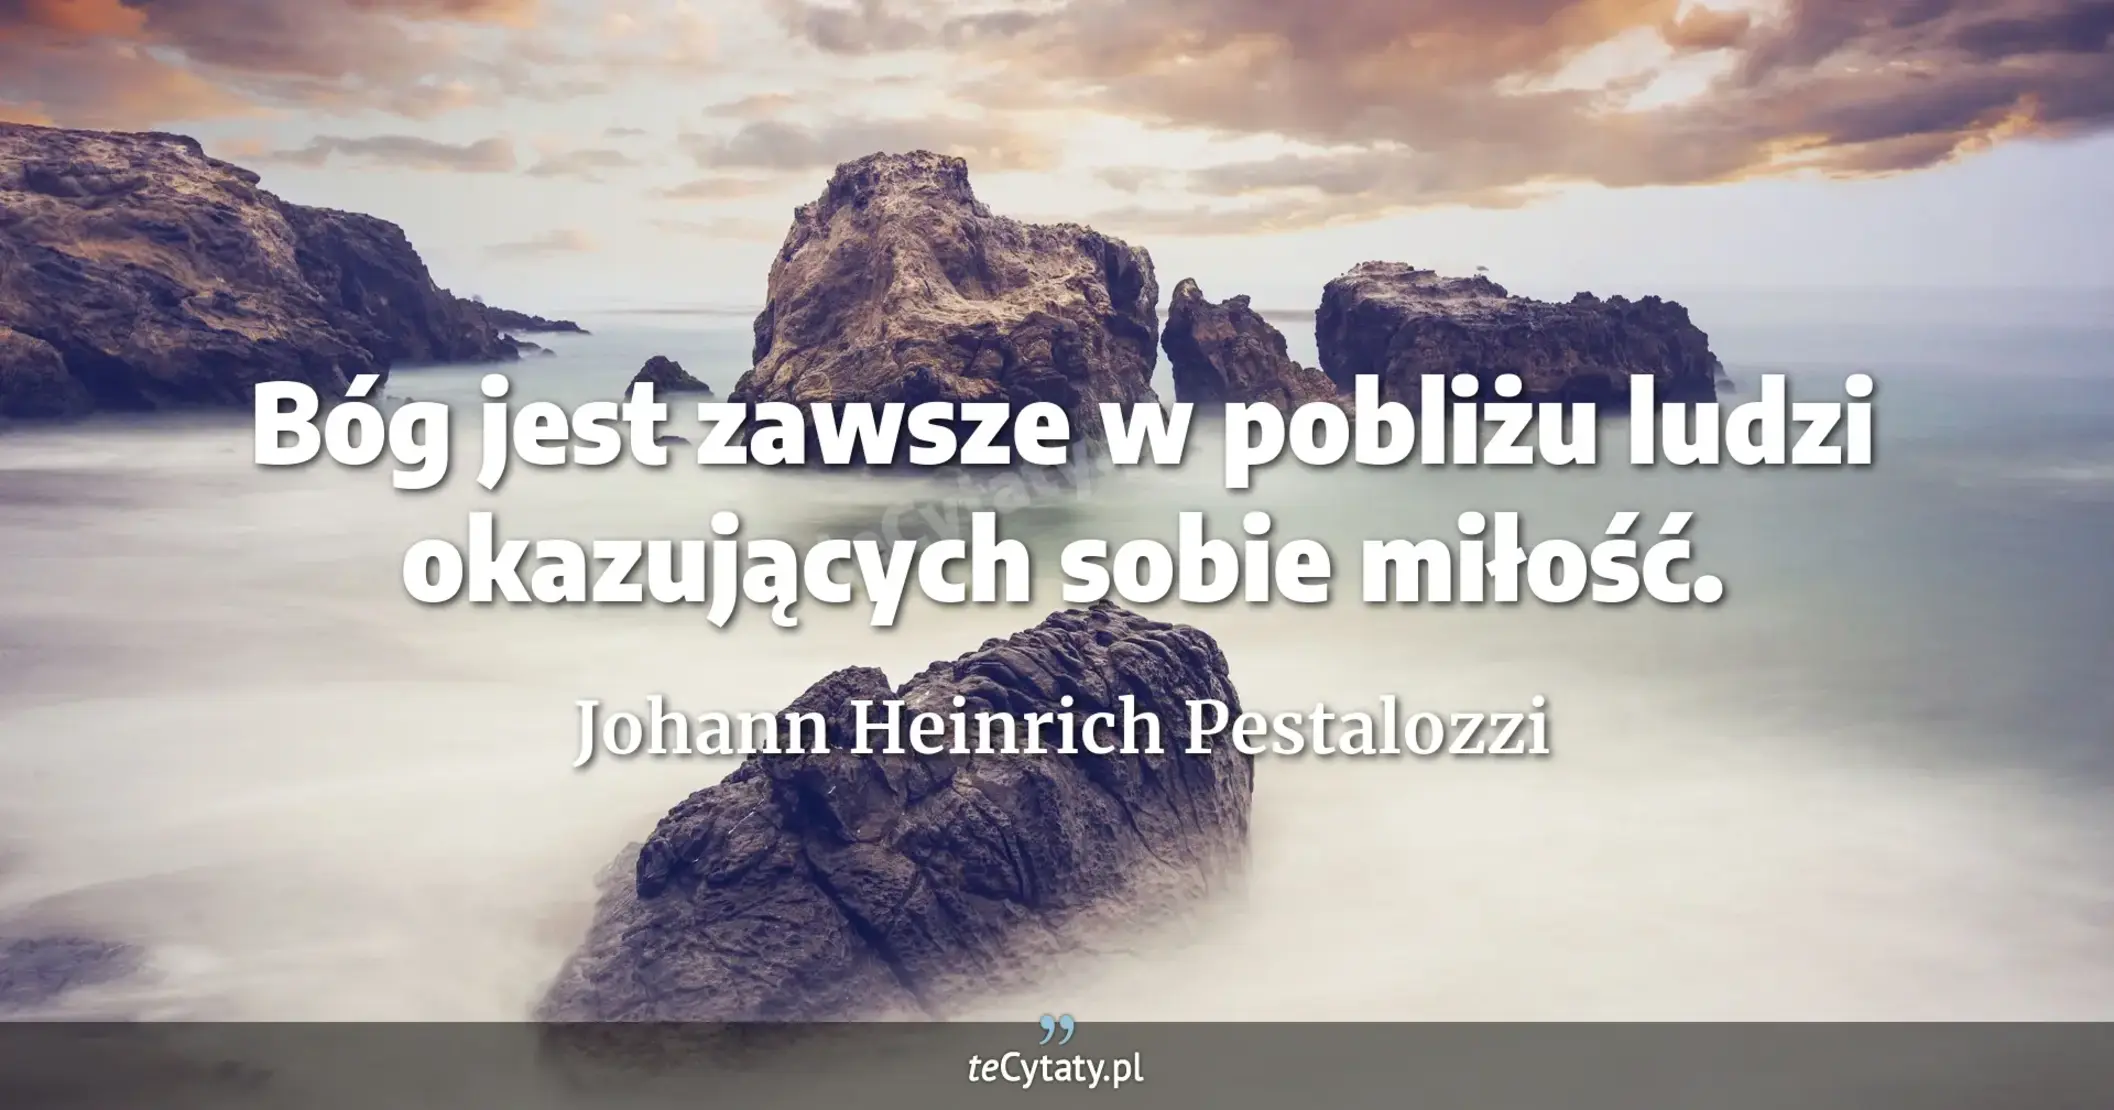 Bóg jest zawsze w pobliżu ludzi okazujących sobie miłość. - Johann Heinrich Pestalozzi